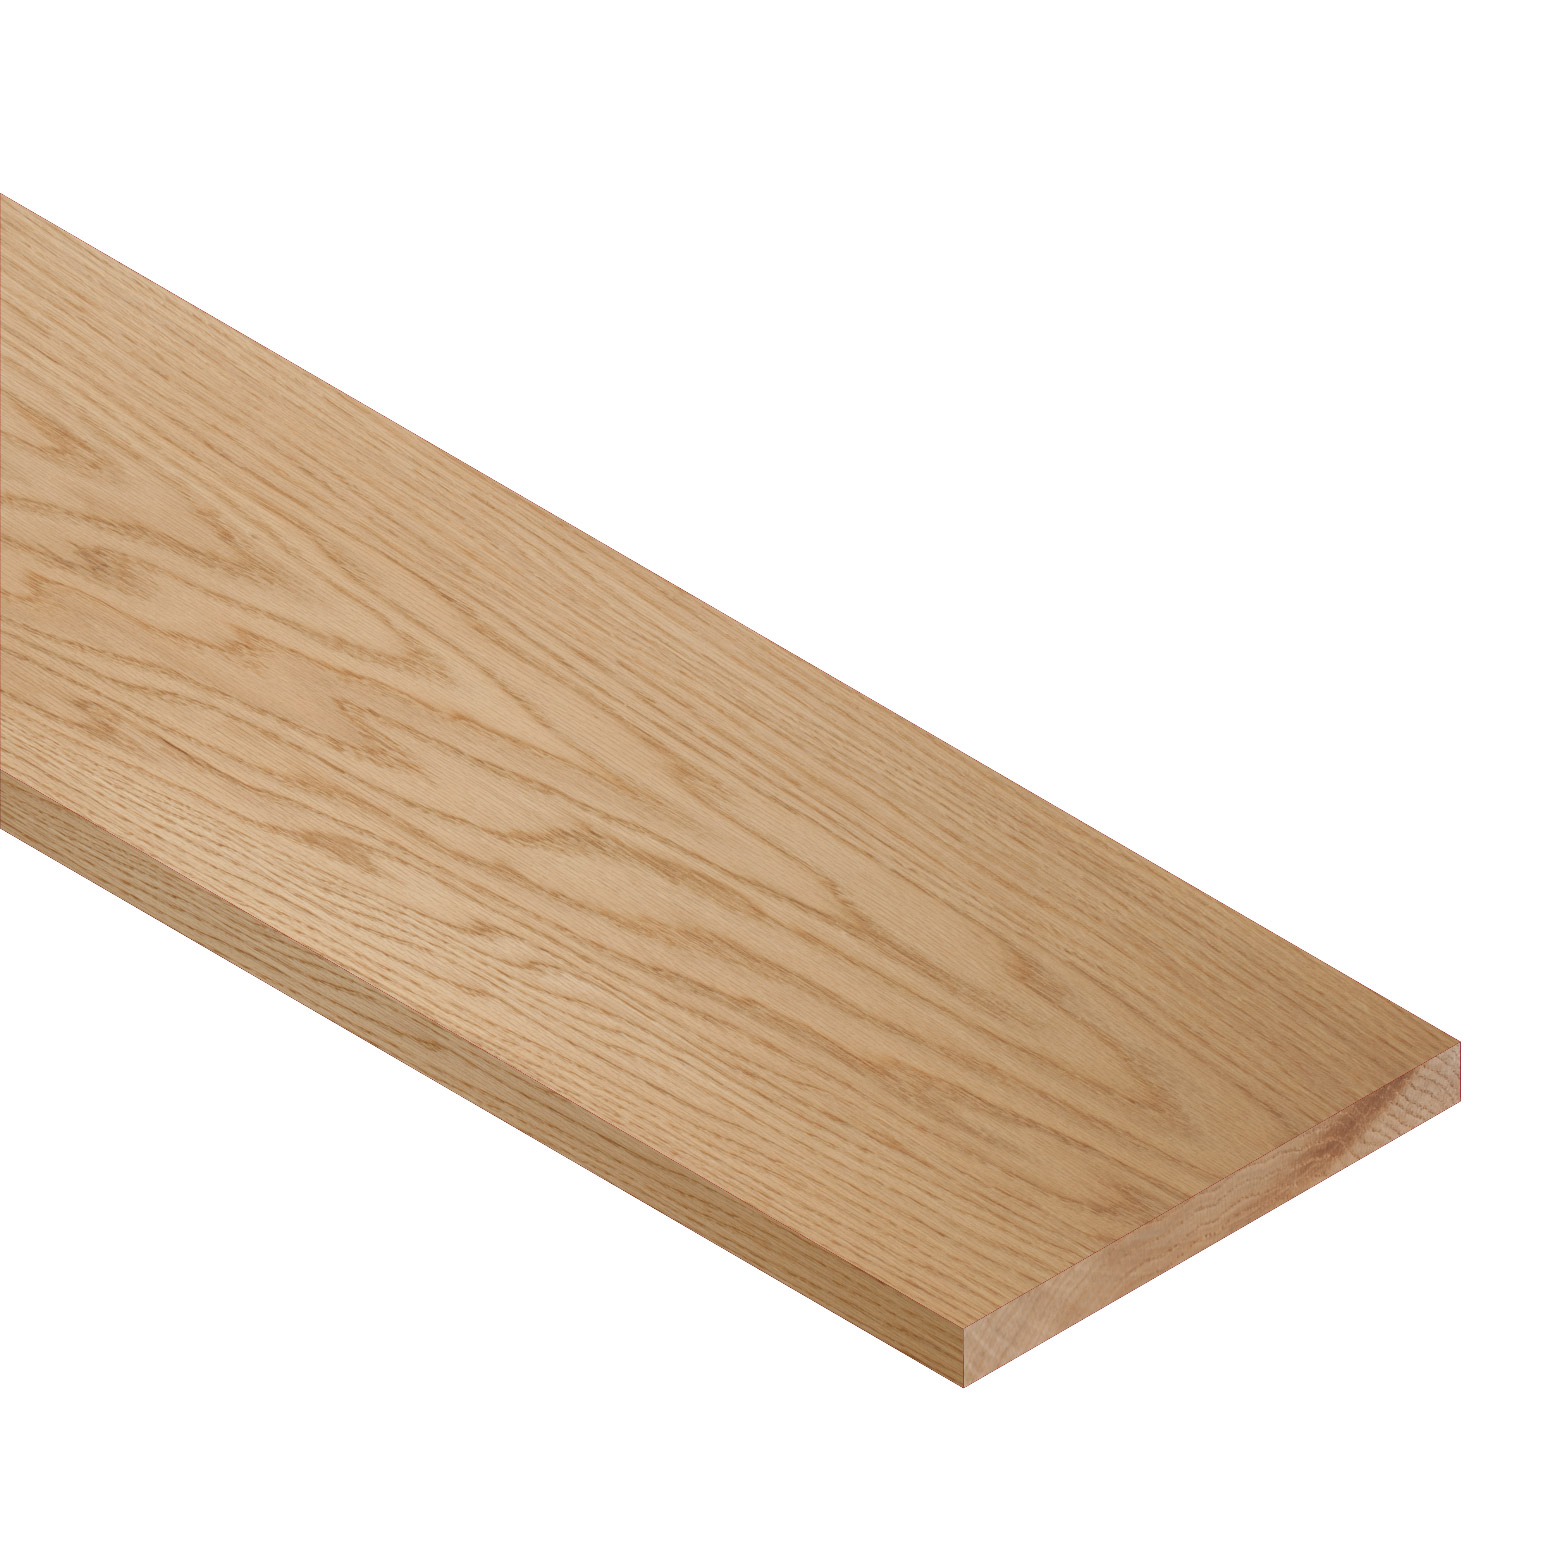 1 X 8 Cedar Board